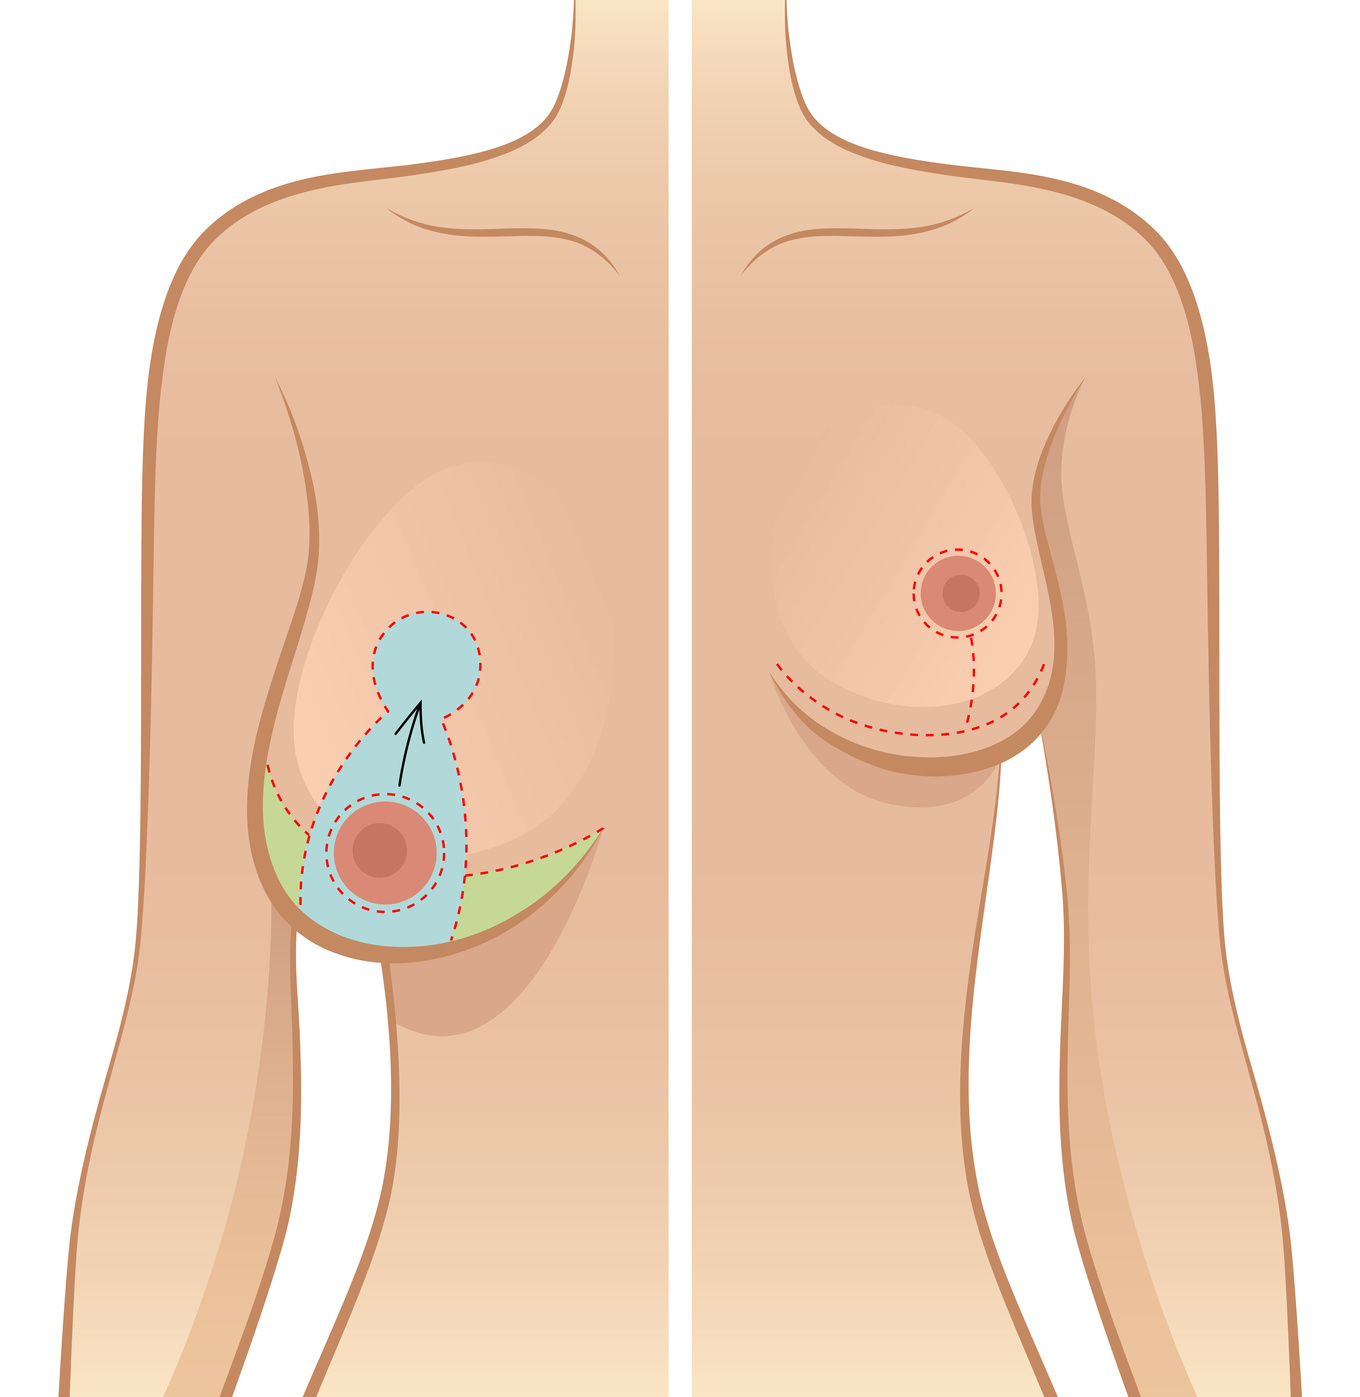 Remodelage des seins et réduction mammaire